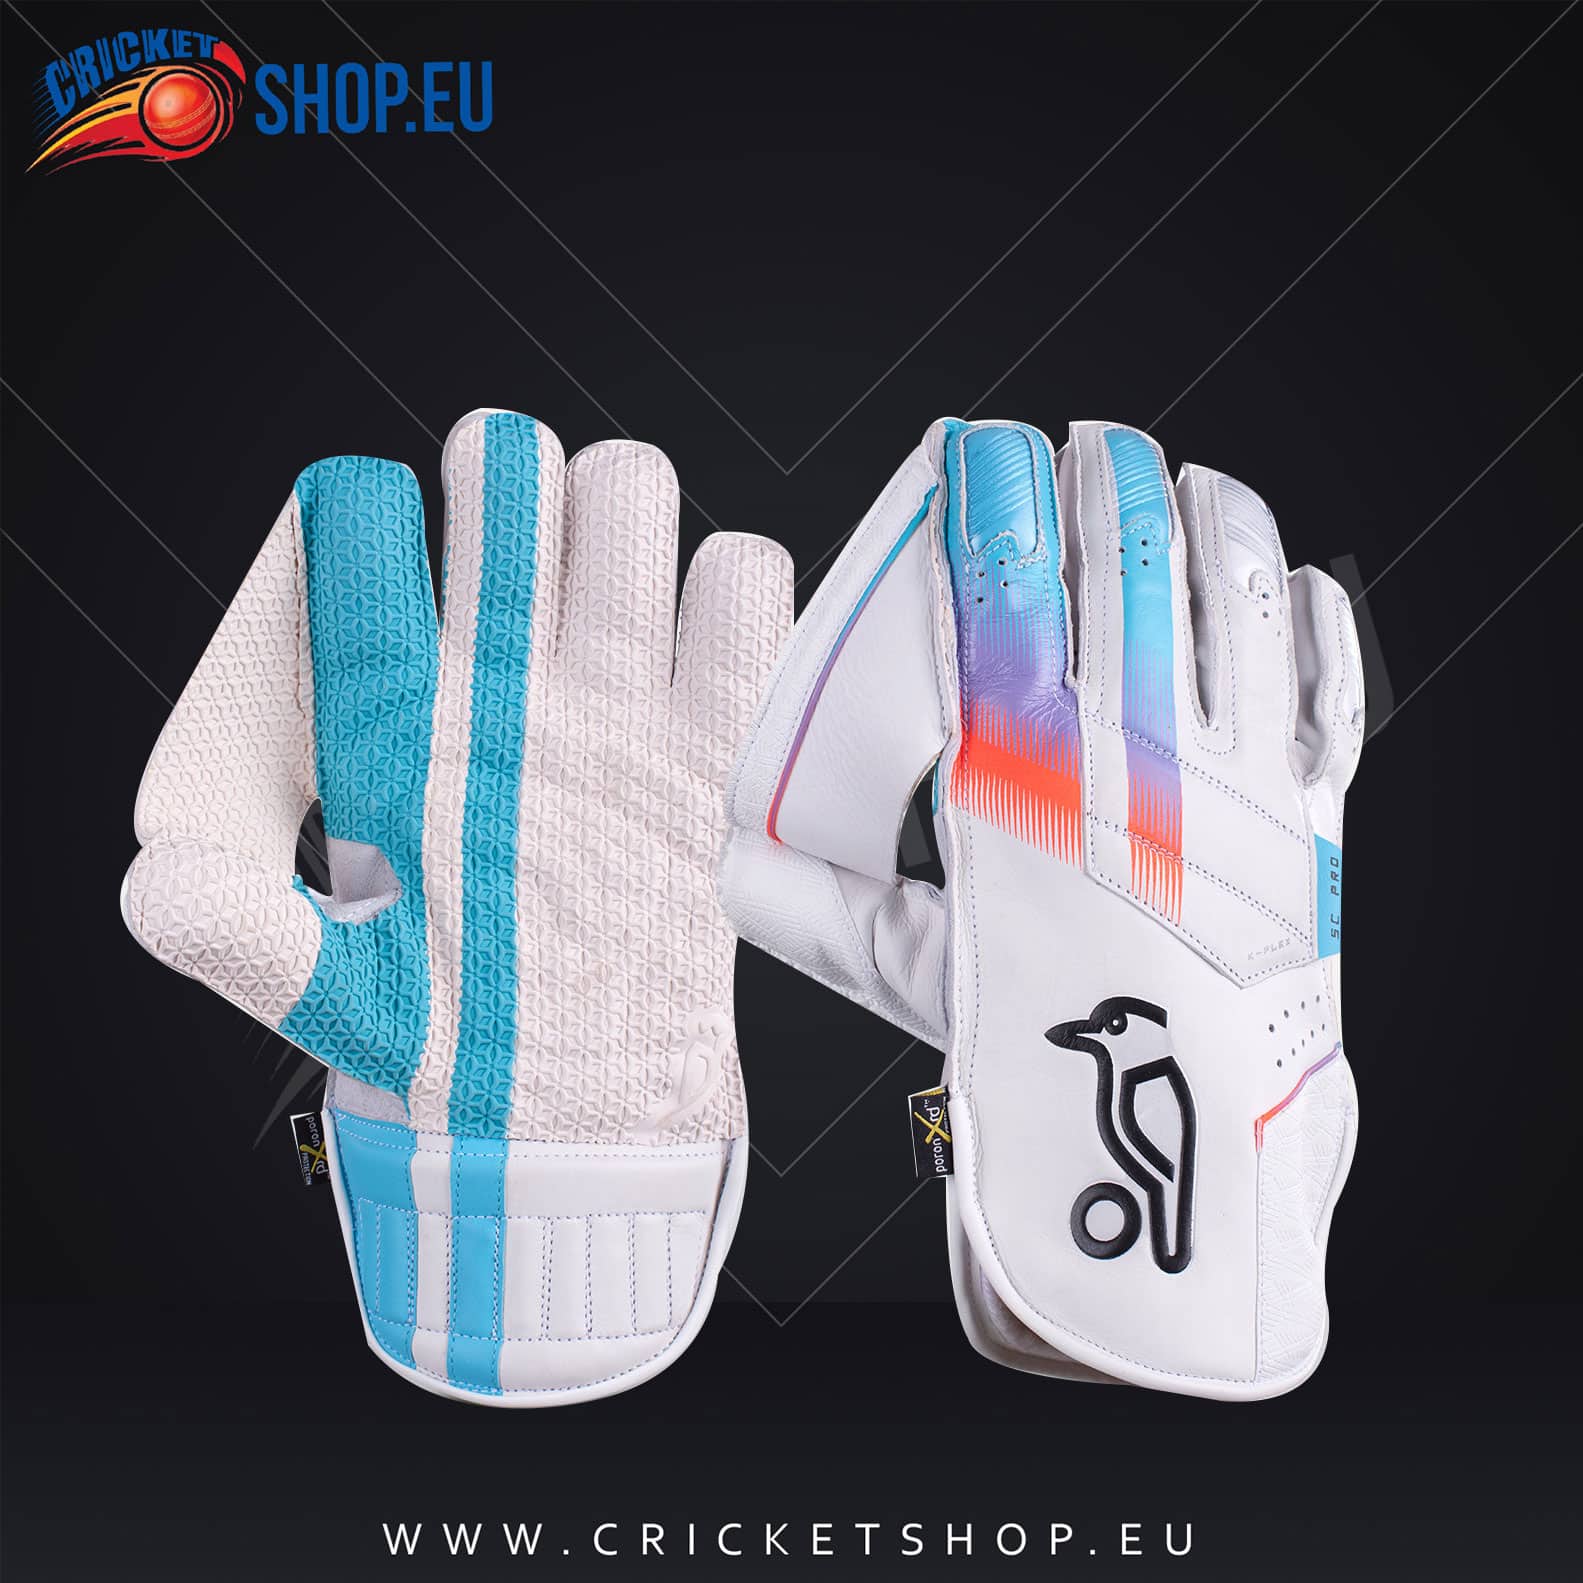 Kookaburra SC PRO Wicket Keeping Gloves